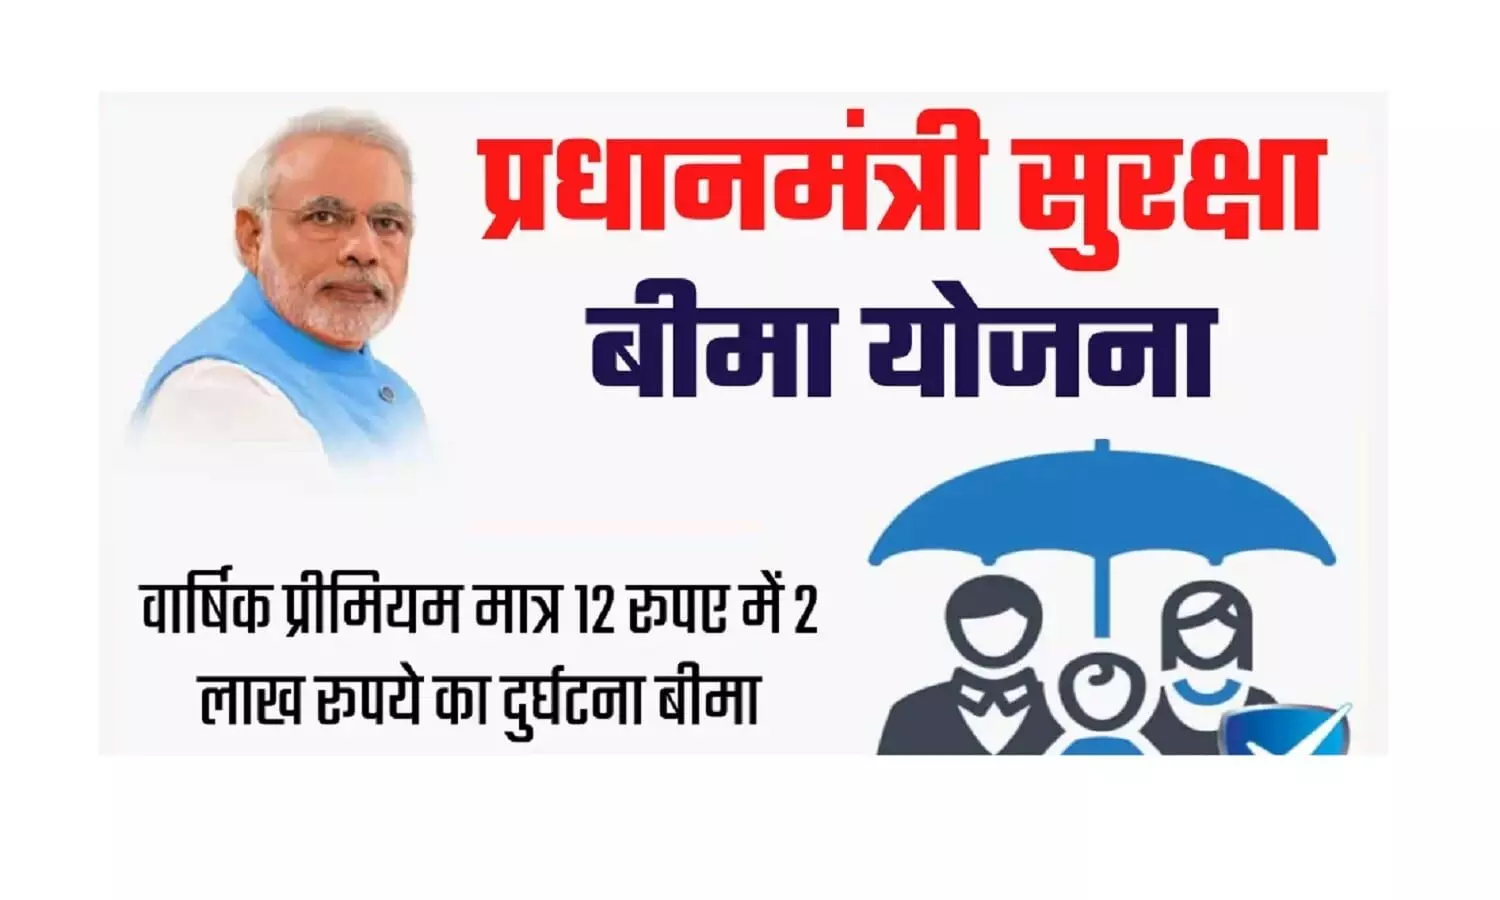 प्रधानमंत्री सुरक्षा बीमा योजना के तहत ₹12, खर्च कर 2 लाख रुपए का उठाएं फायदा